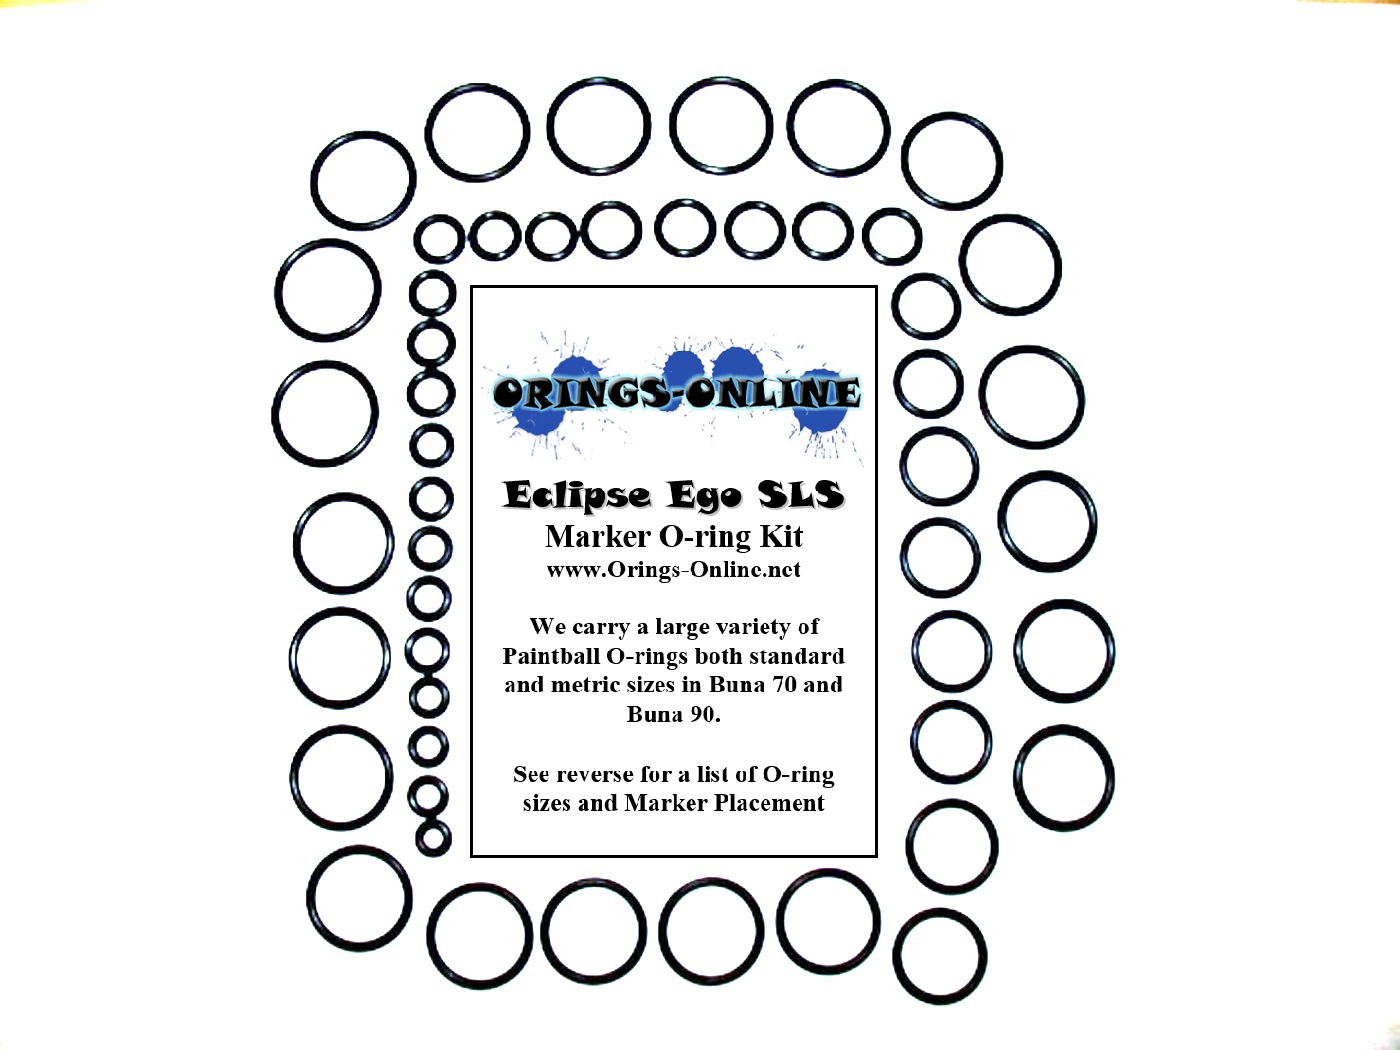 Planet Eclipse Ego SLS Marker O-ring Kit